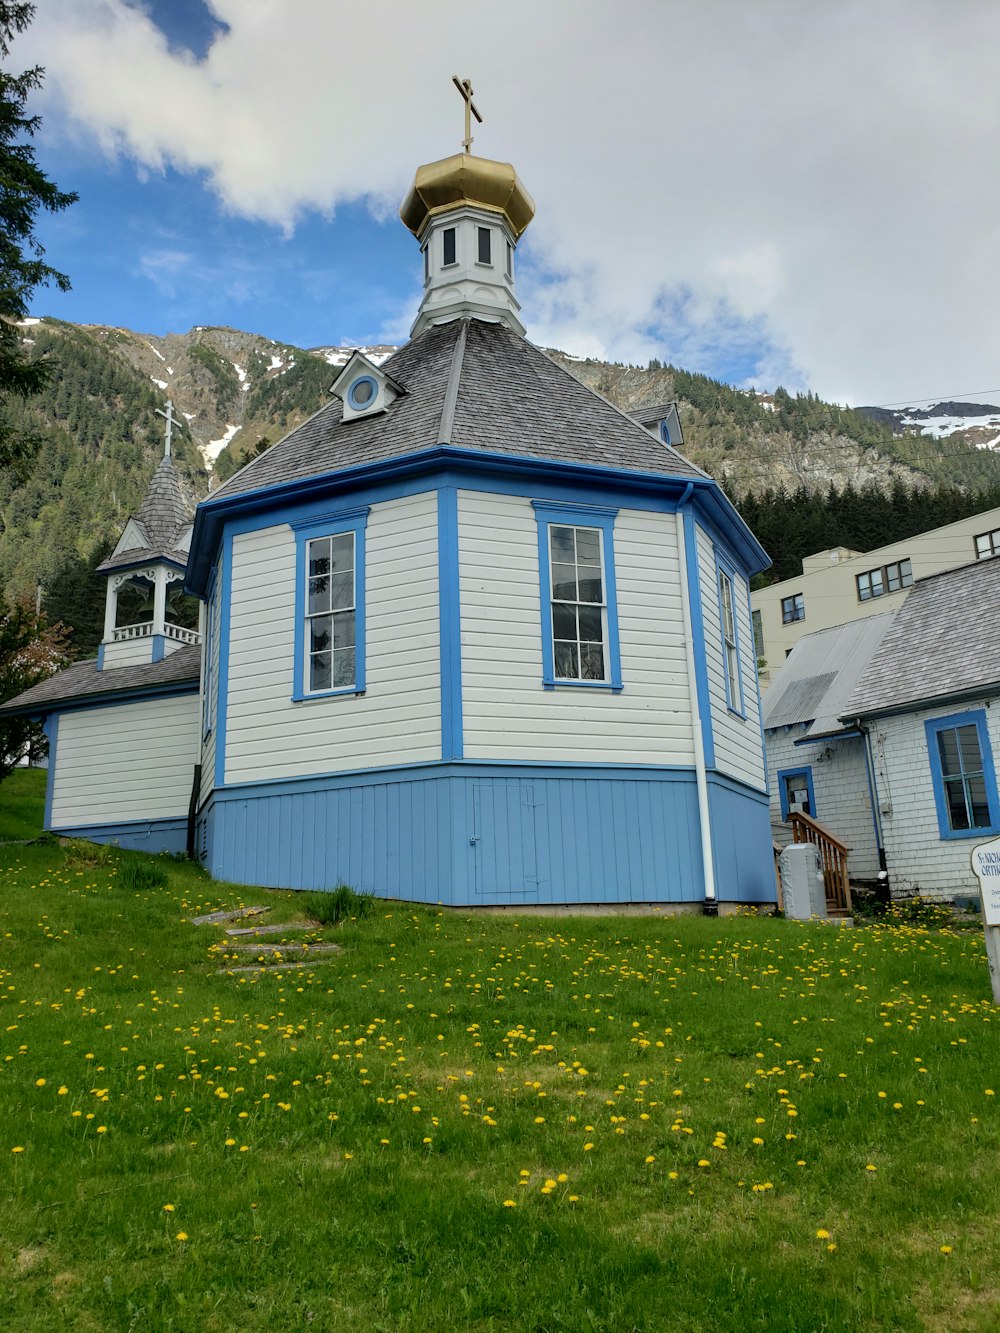 Maison en bois bleu et blanc sur un champ d’herbe verte près de la montagne pendant la journée